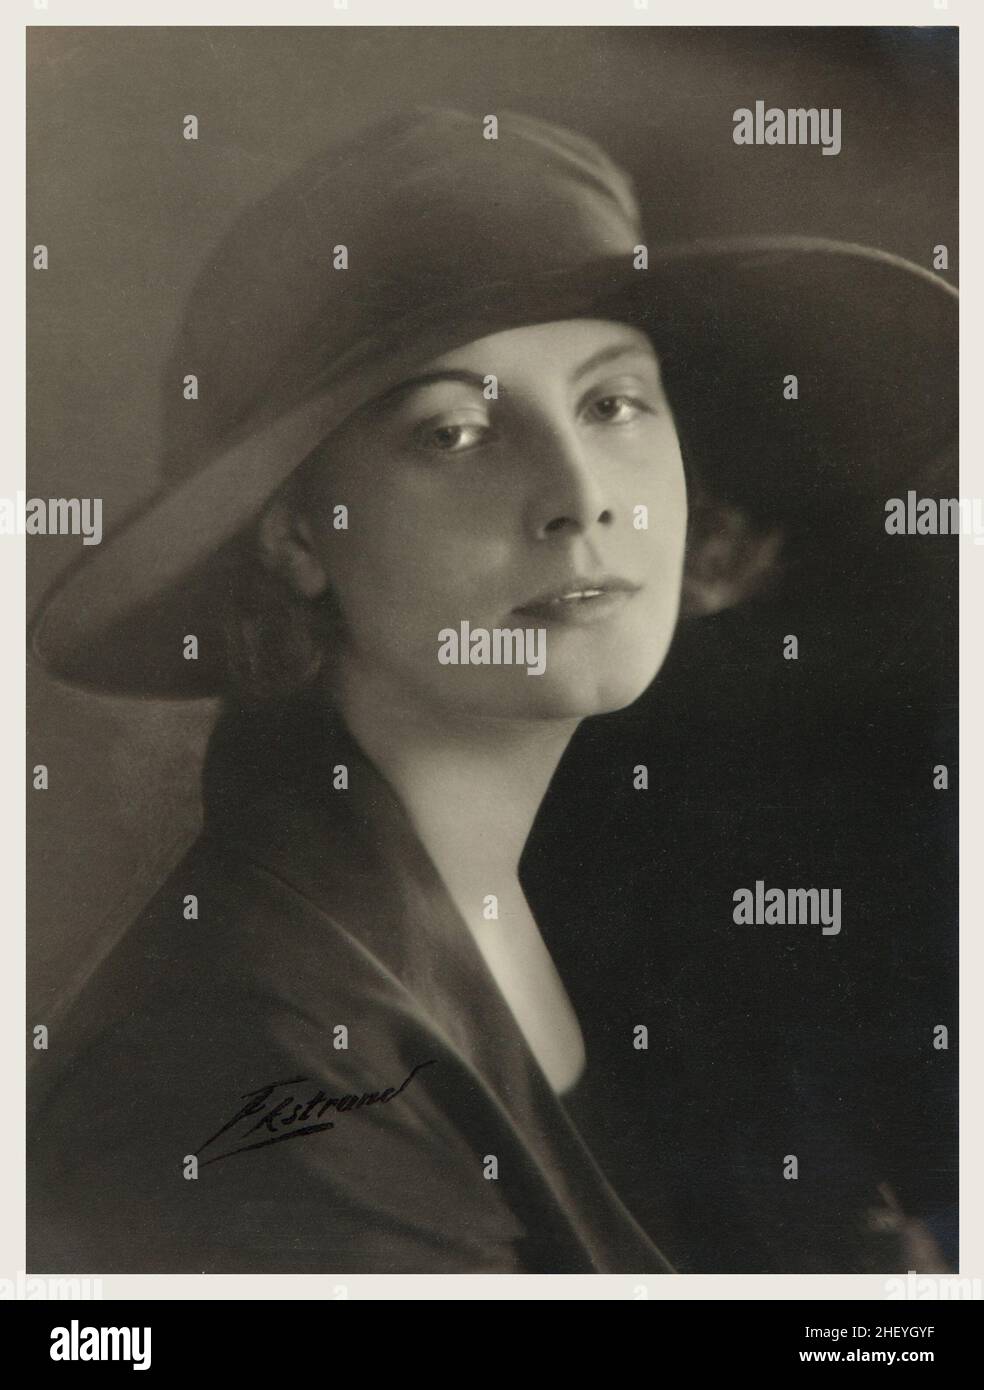 Greta Garbo von Olof Ekstrand (1923). Schwedisches Porträtfoto Stockfoto